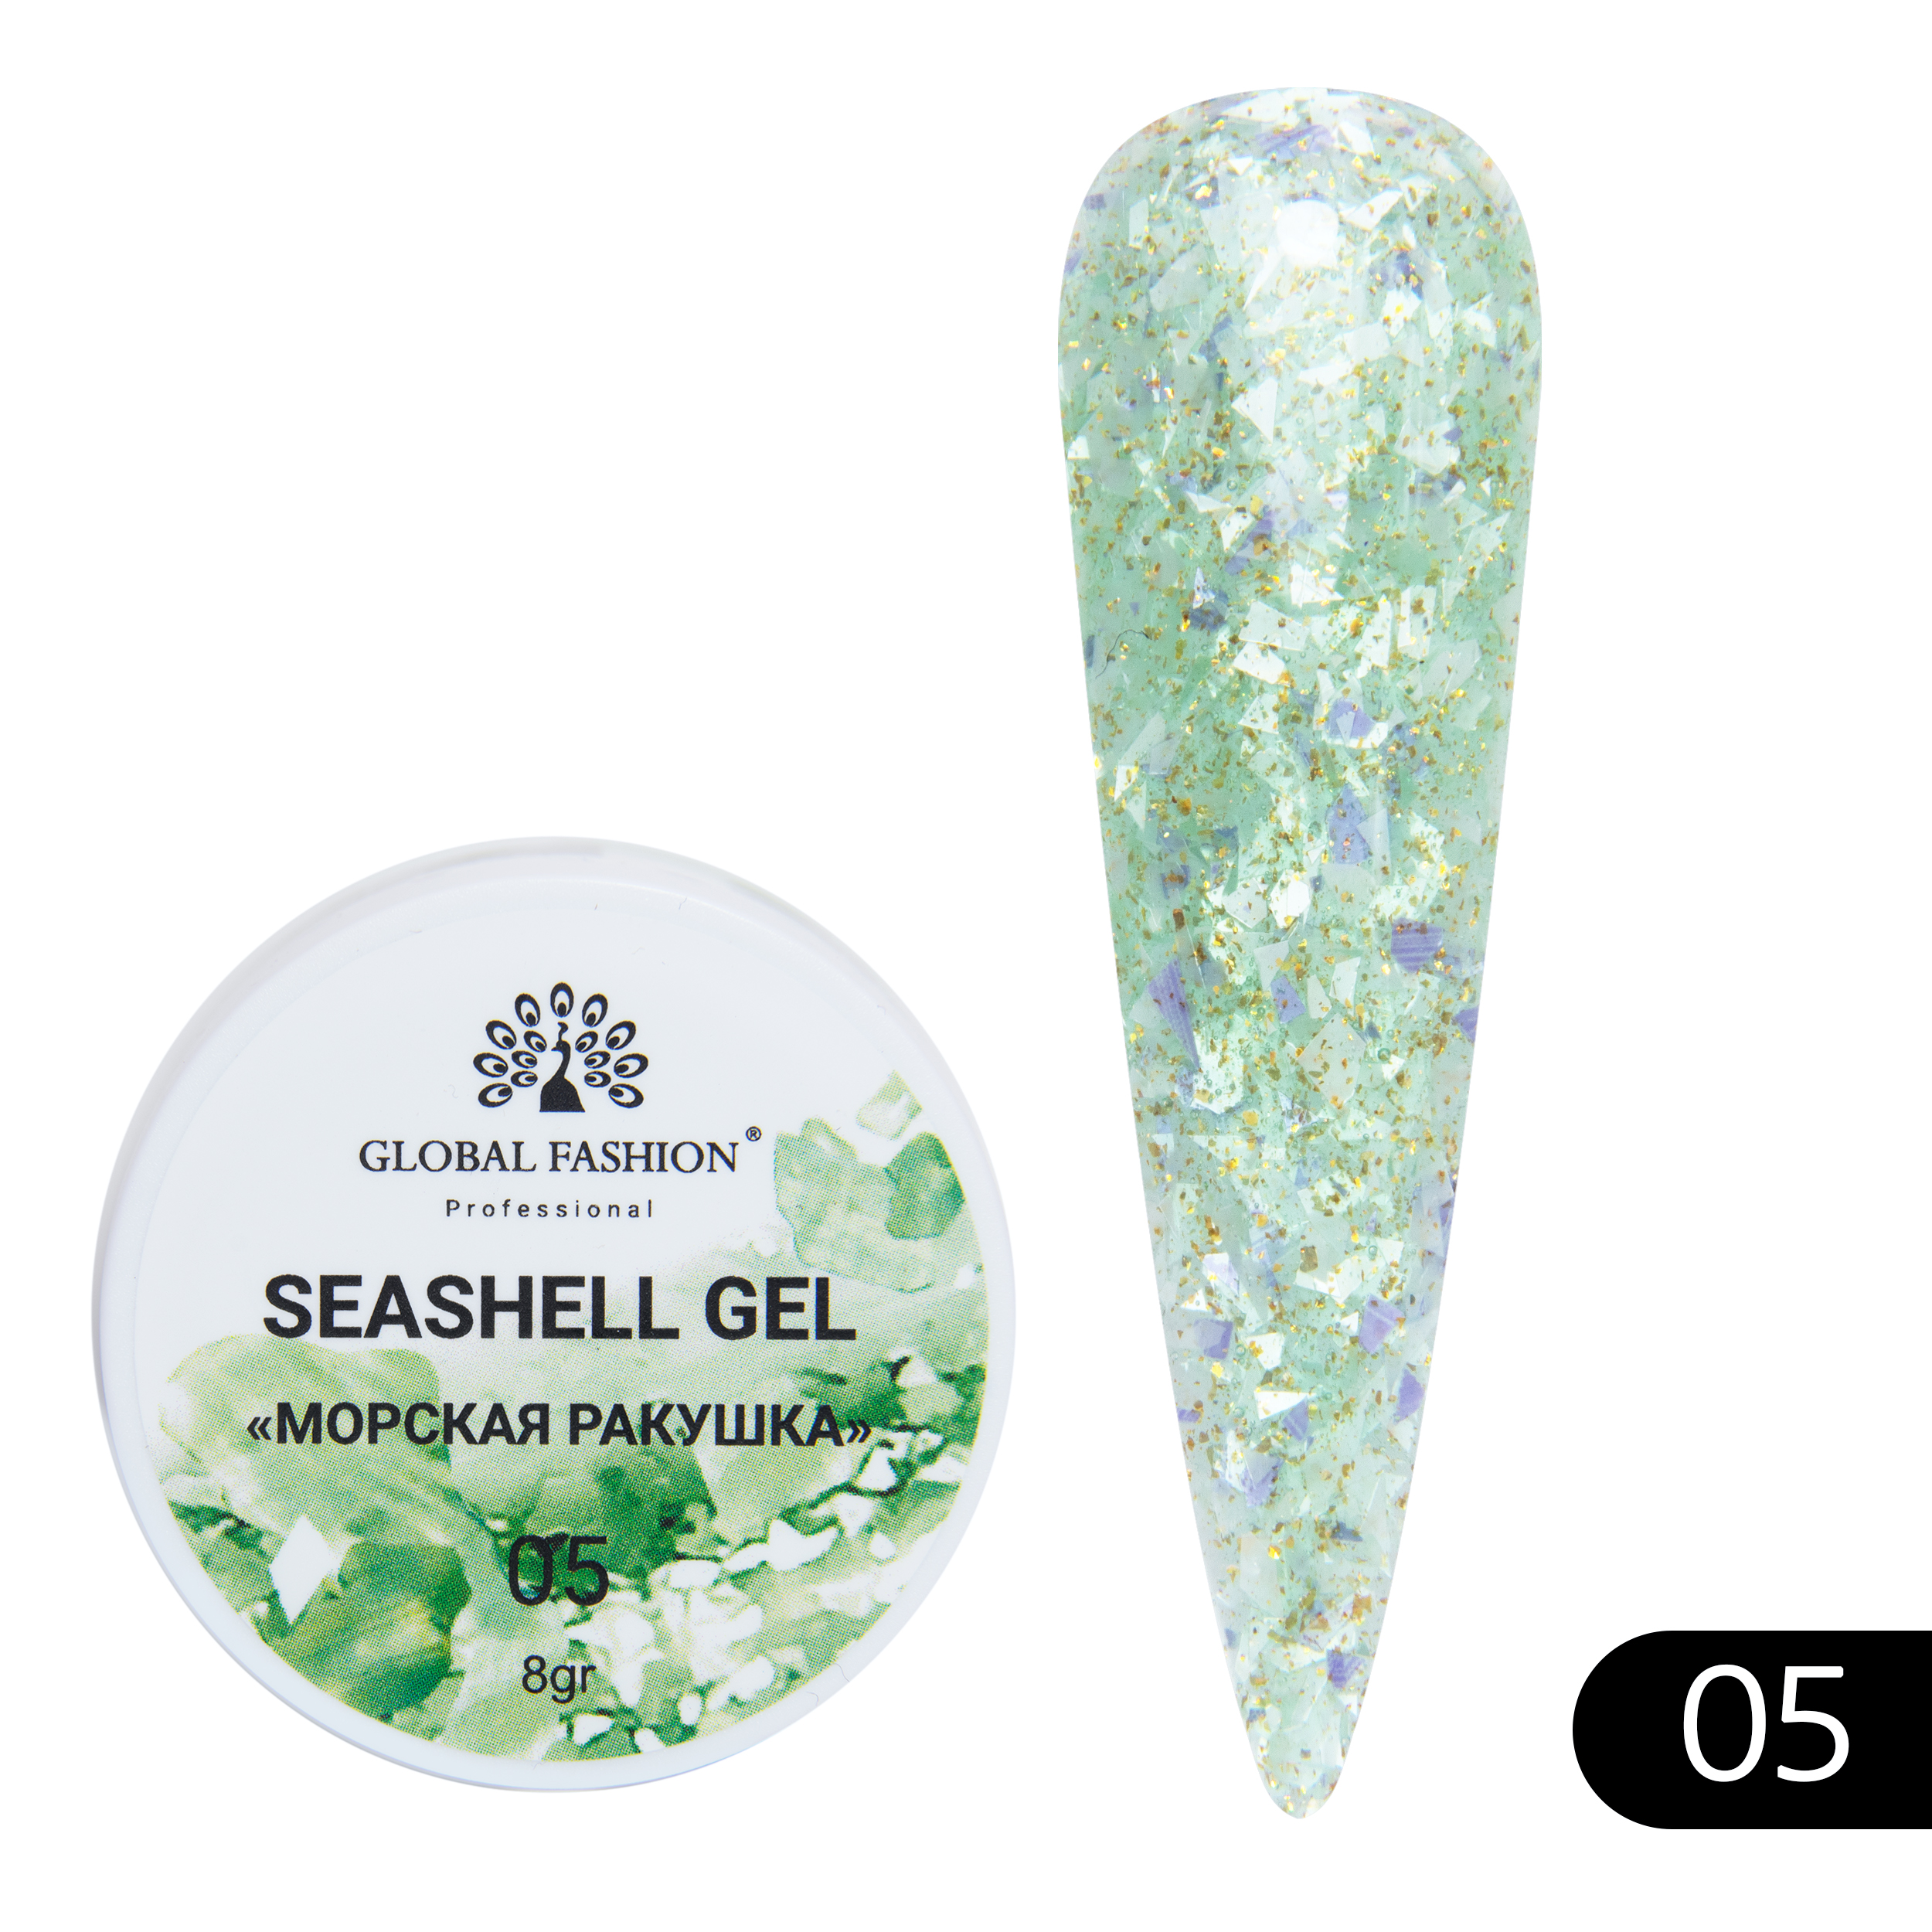 Гель-краска для ногтей Global Fashion с мраморным эффектом ракушки Seashell Gel №05 5 г